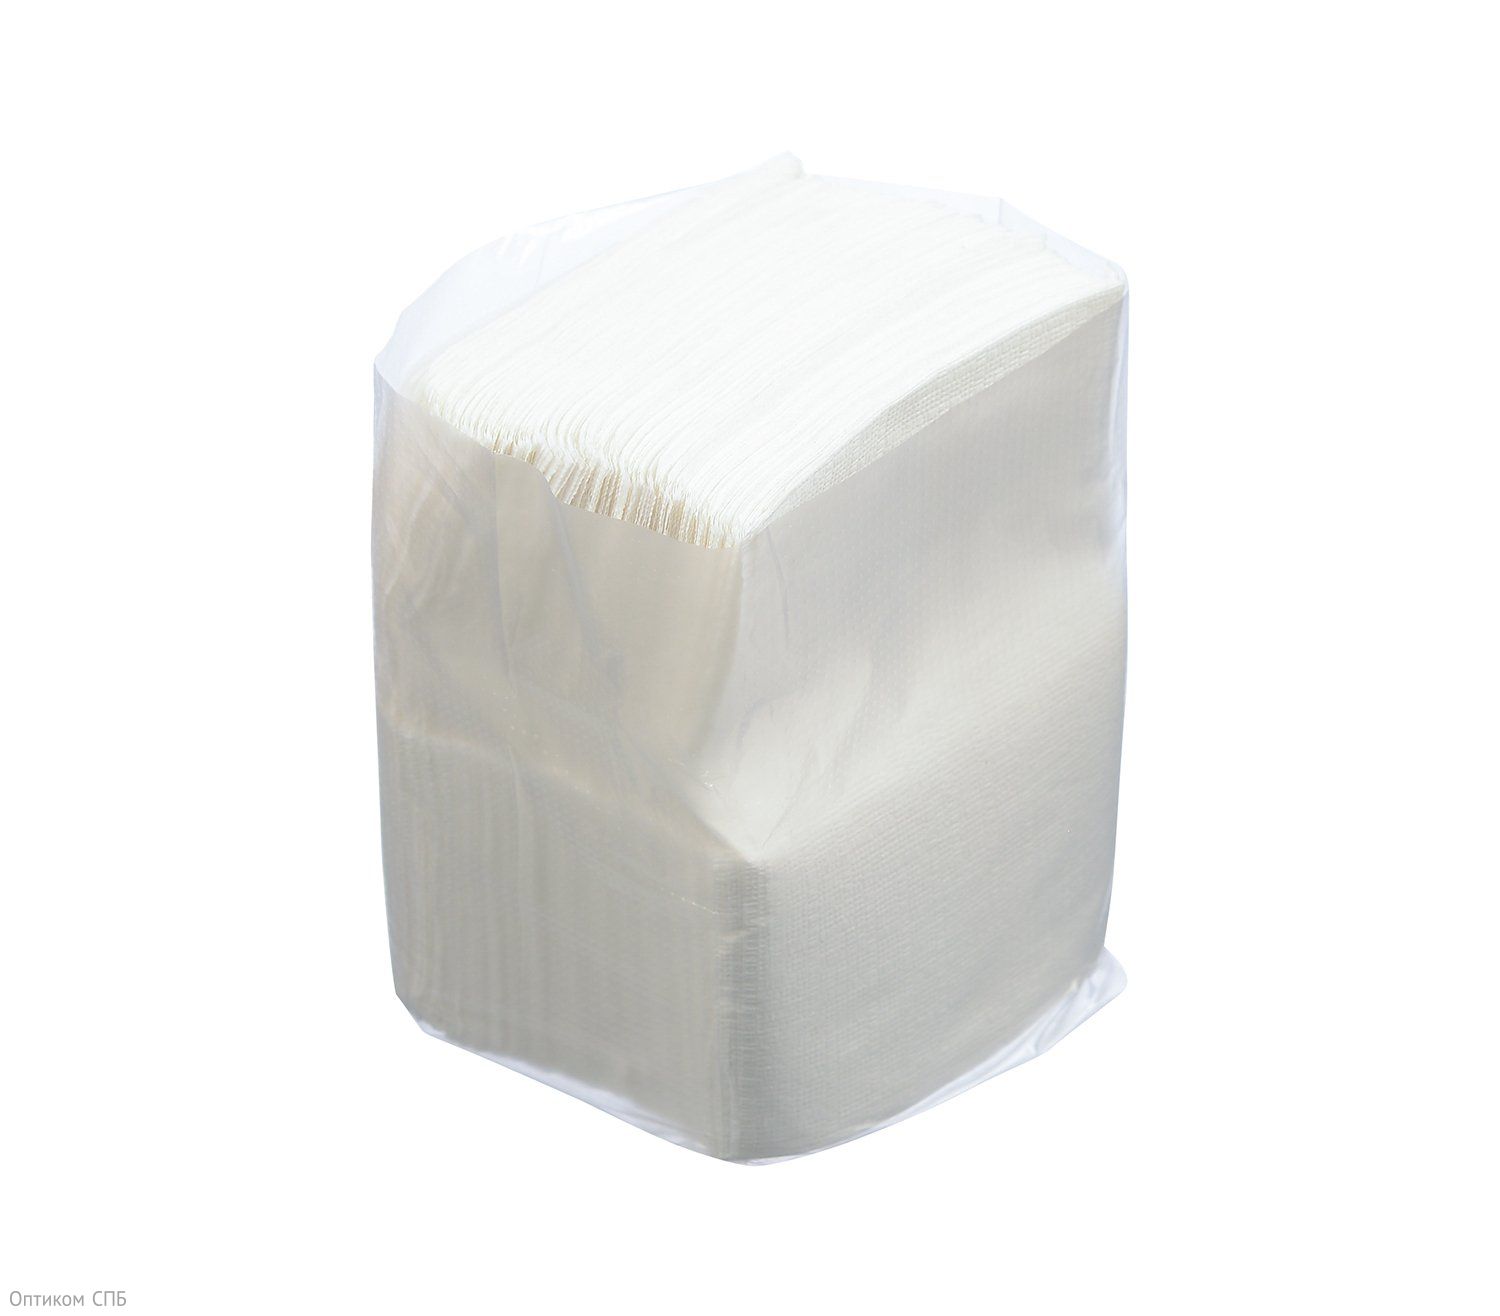 Салфетки бумажные однослойные, для настольных диспенсеров. Бумажные салфетки могут быть использованы также в целях личной гигиены. В упаковке 200 салфеток, размер 18х17 см. В коробке 48 упаковок.